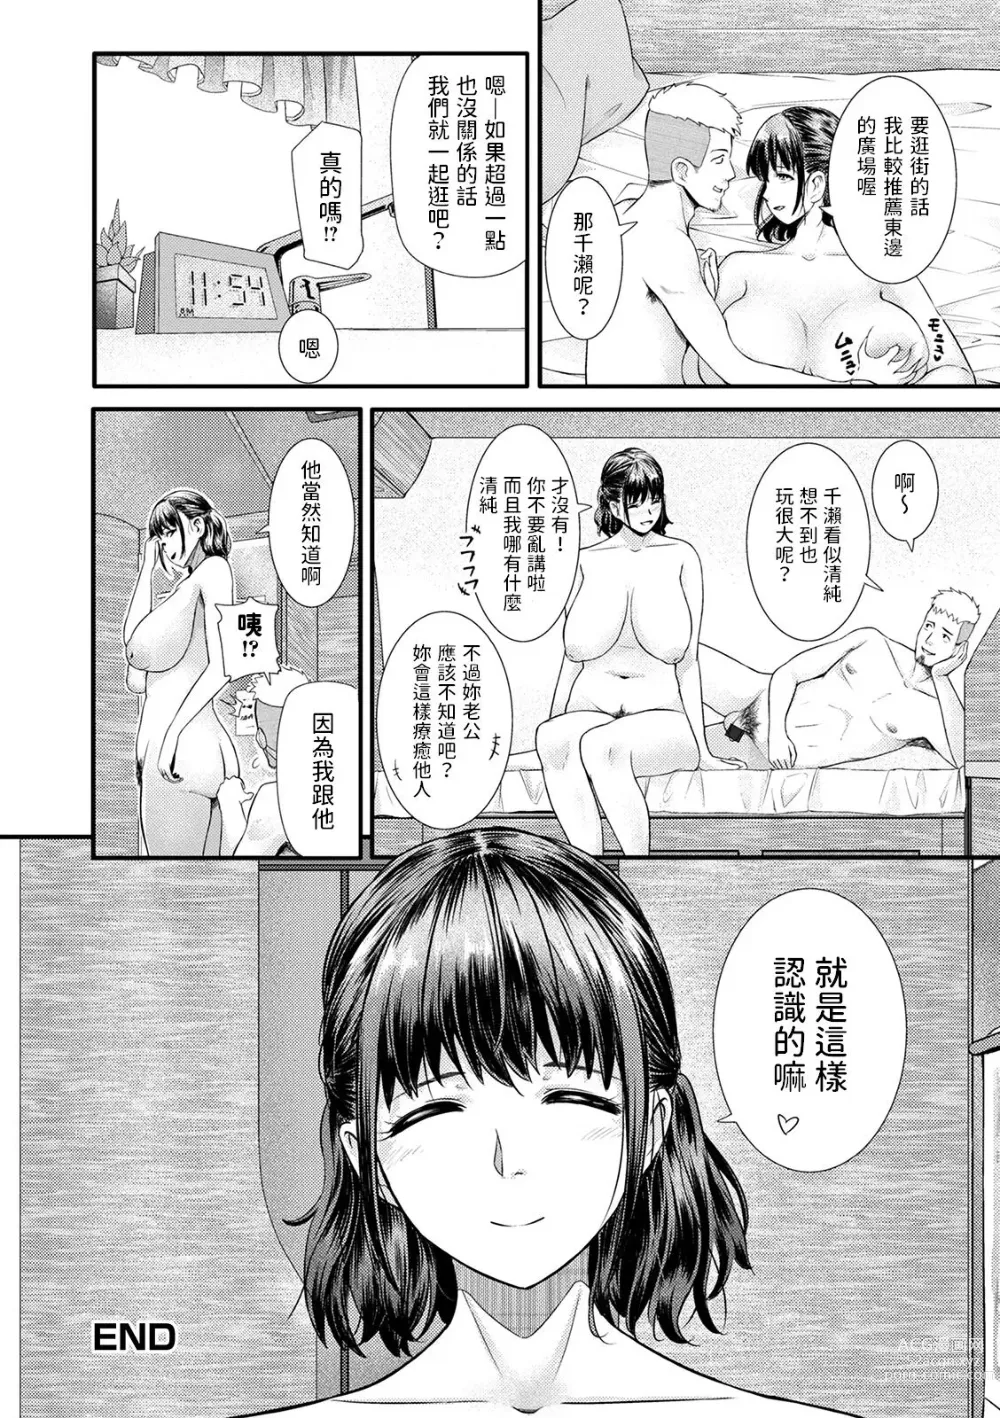 Page 18 of manga Therapist